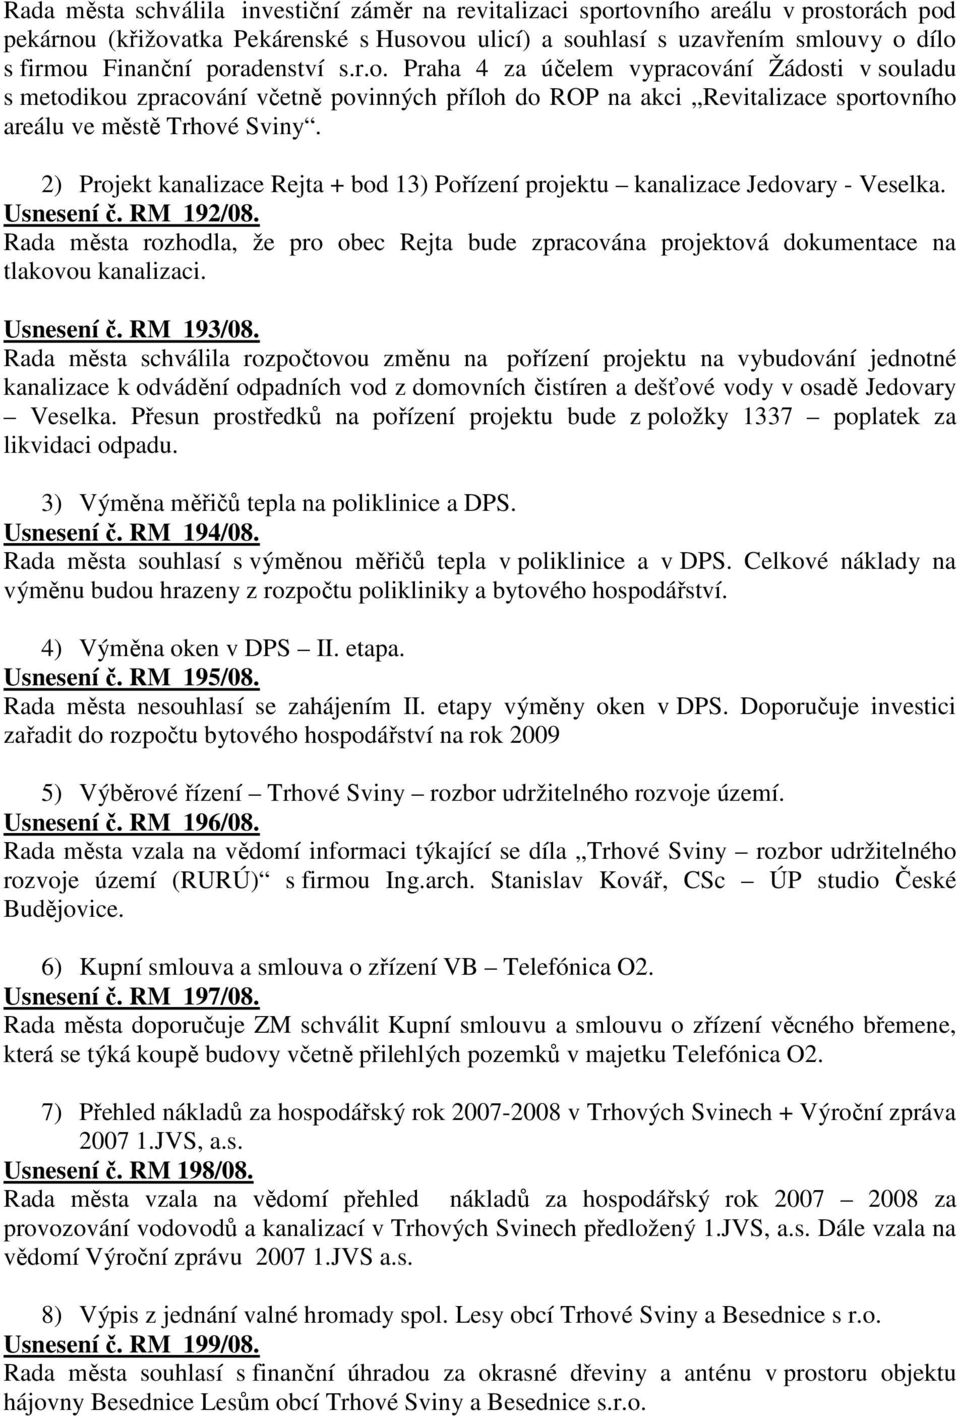 2) Projekt kanalizace Rejta + bod 13) Pořízení projektu kanalizace Jedovary - Veselka. Usnesení č. RM 192/08.